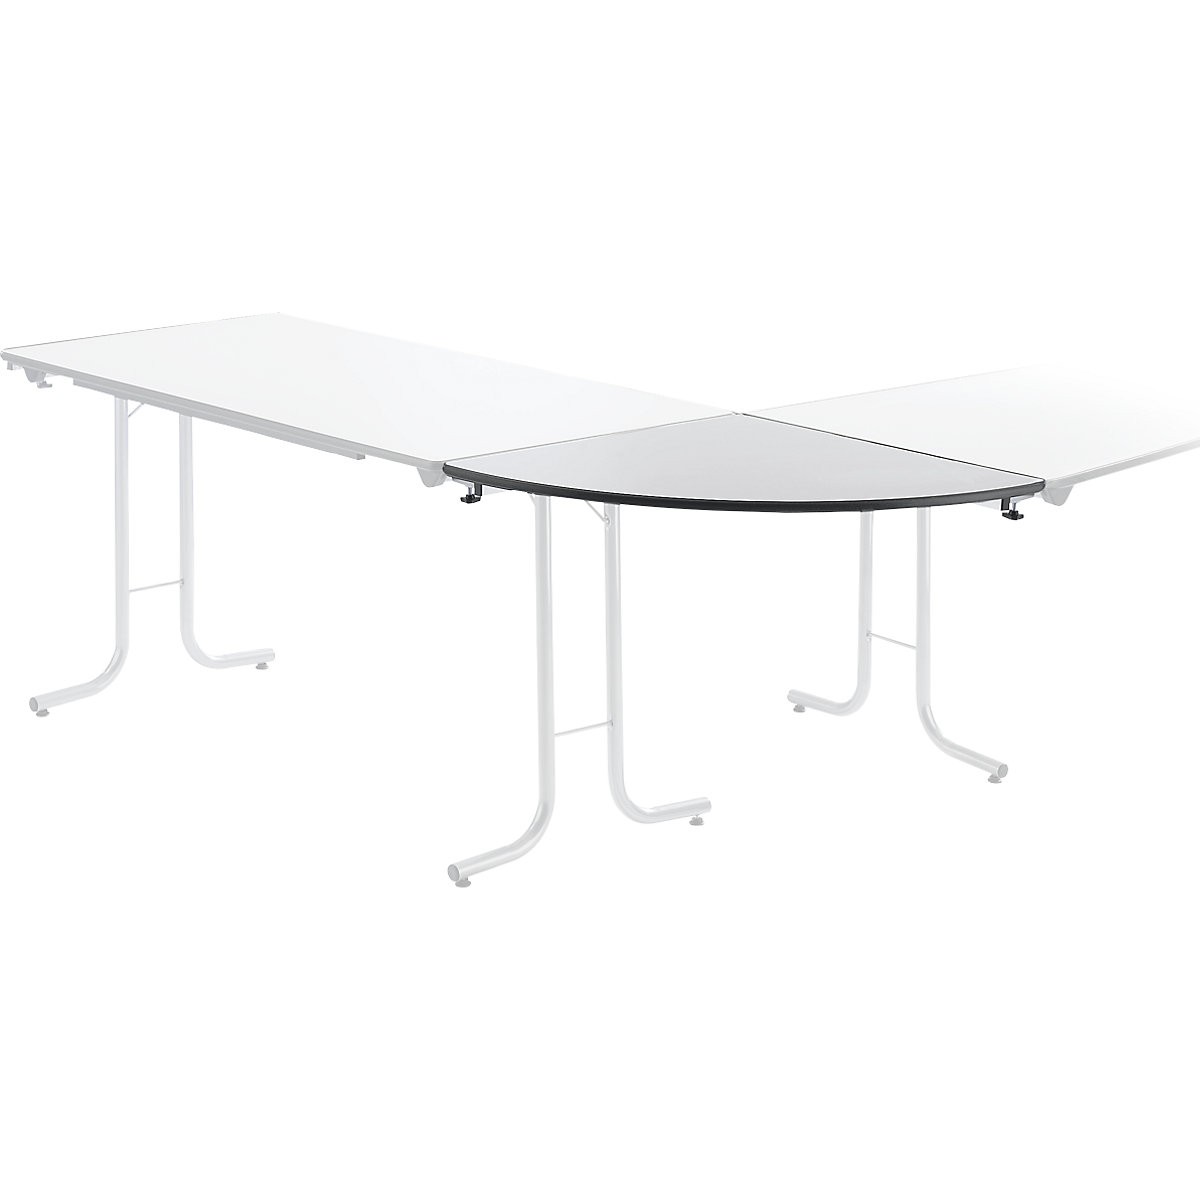 Aanbouwtafel bij inklapbare tafel, bladvorm kwartcirkel, 700 x 700 mm, frame aluminiumkleurig, blad lichtgrijs-5